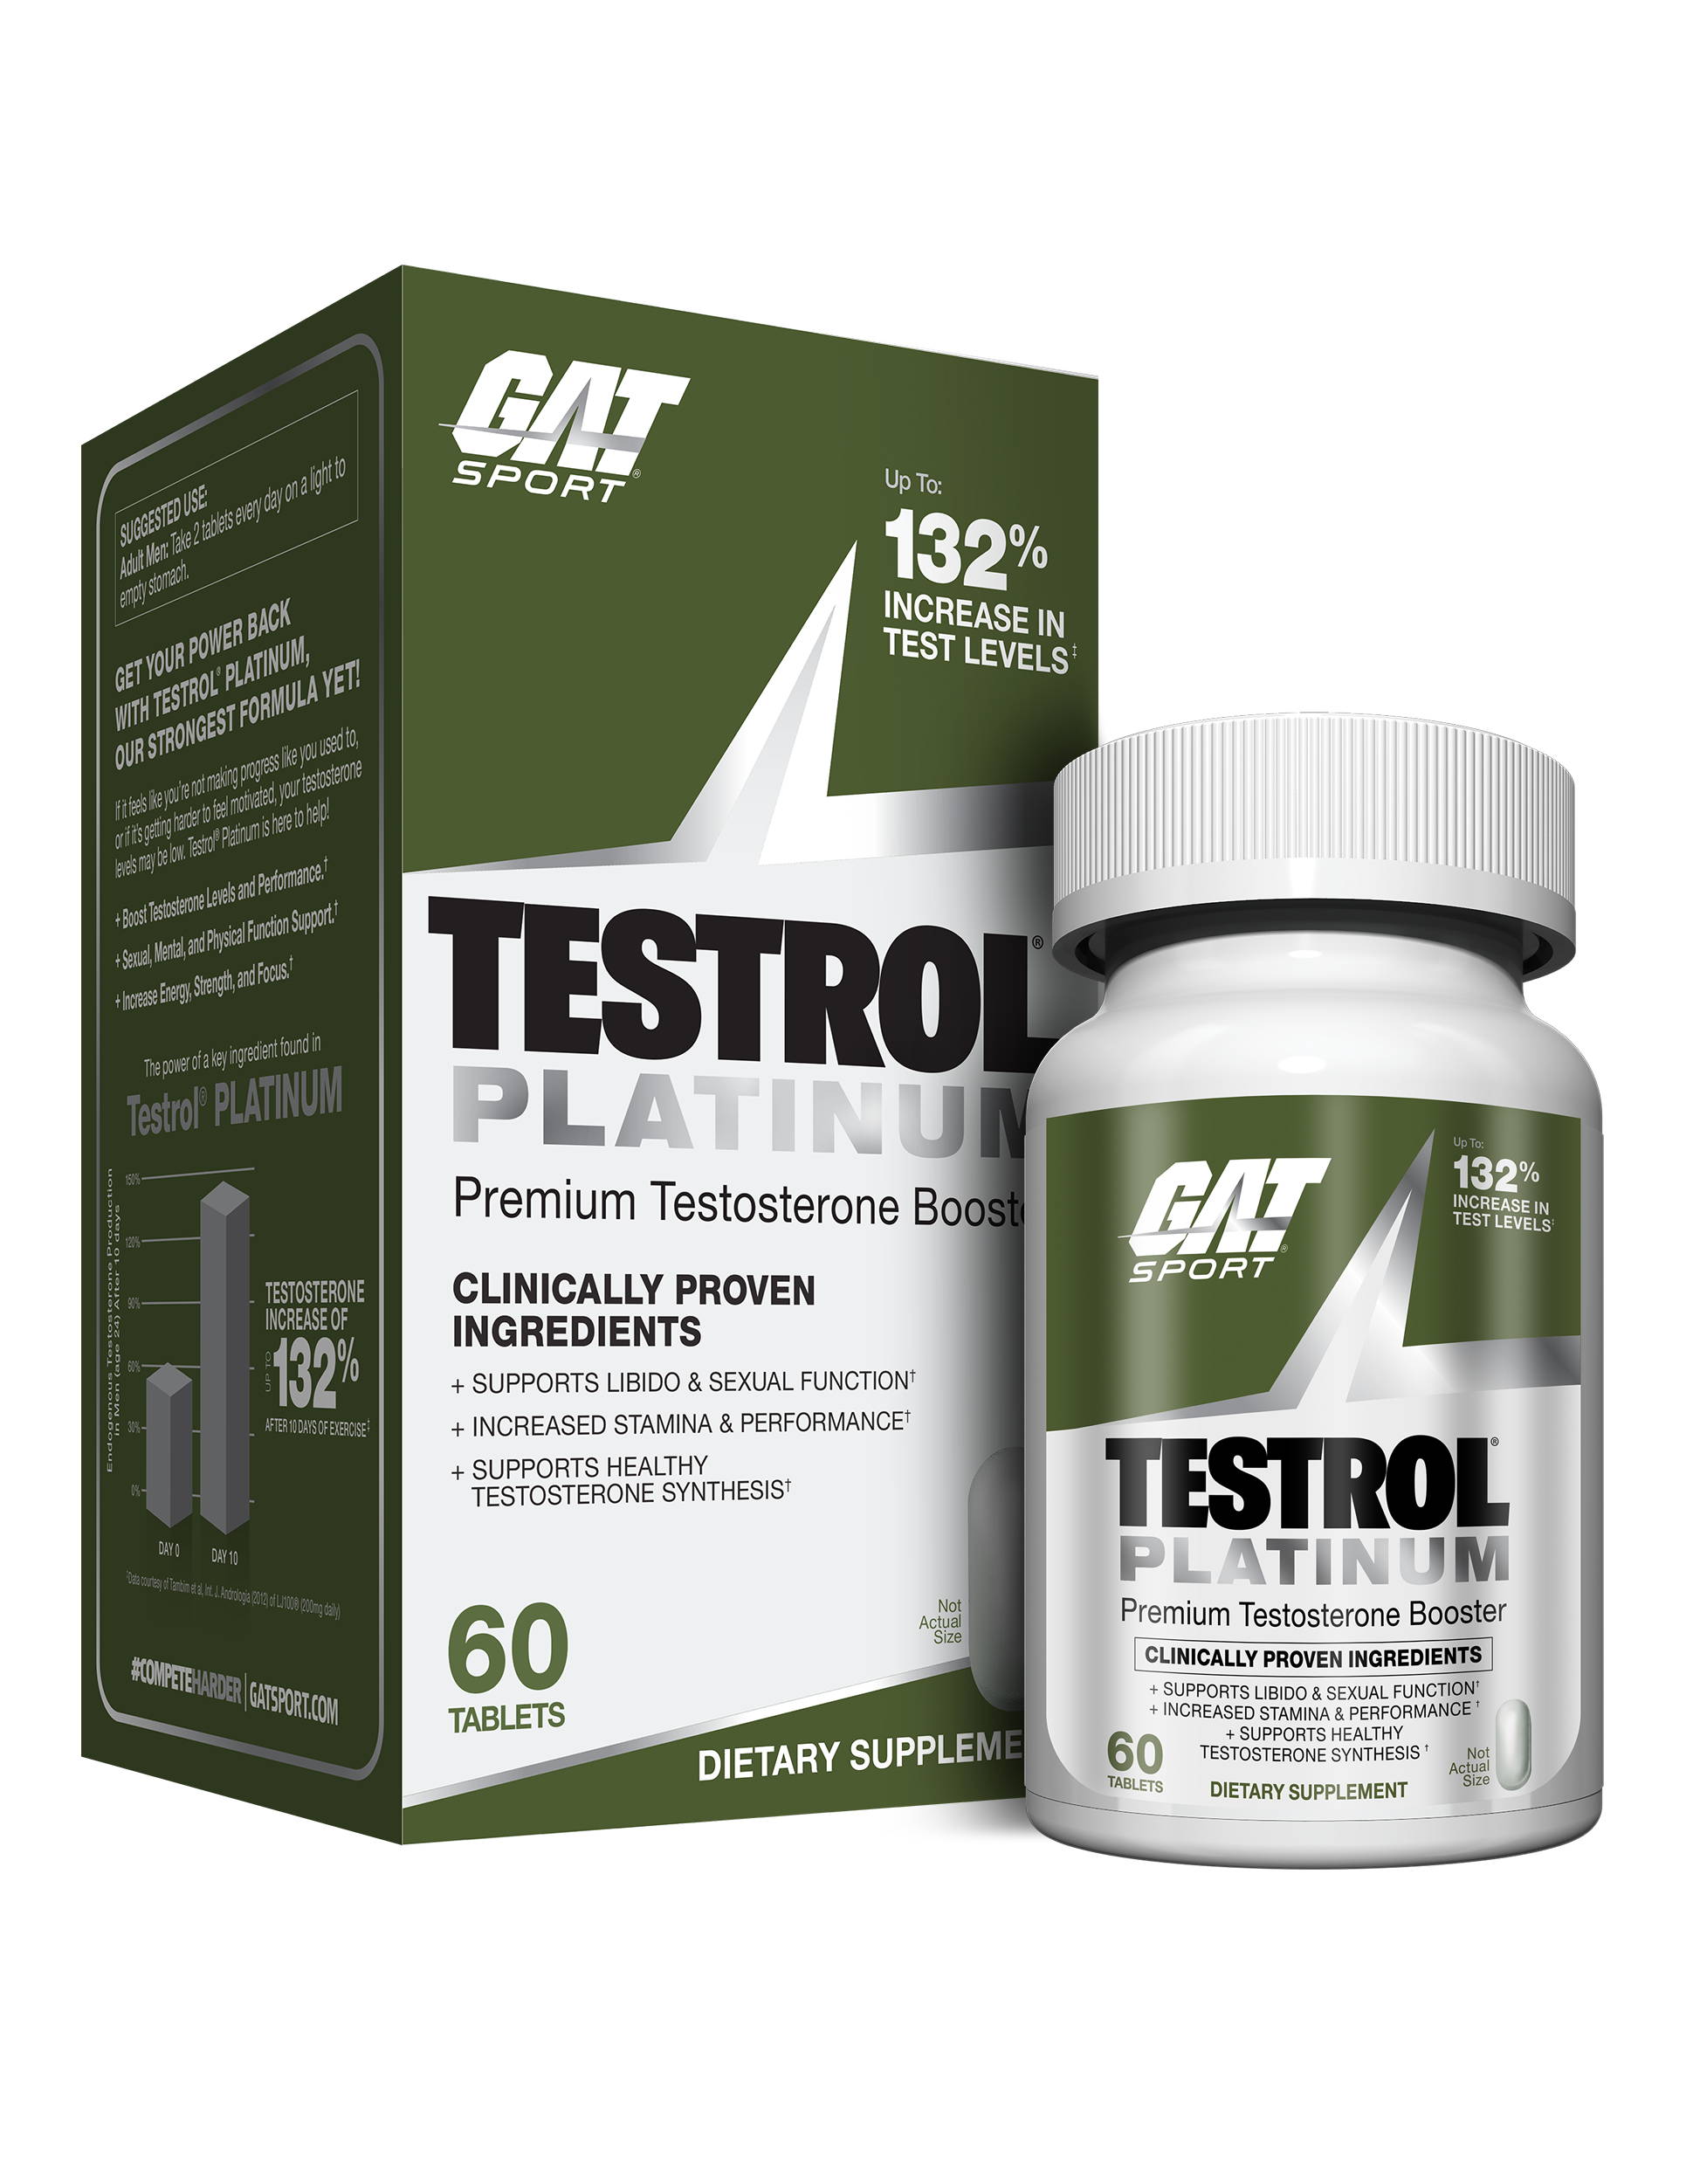 Testrol Platinum - Premium - Box and bottle